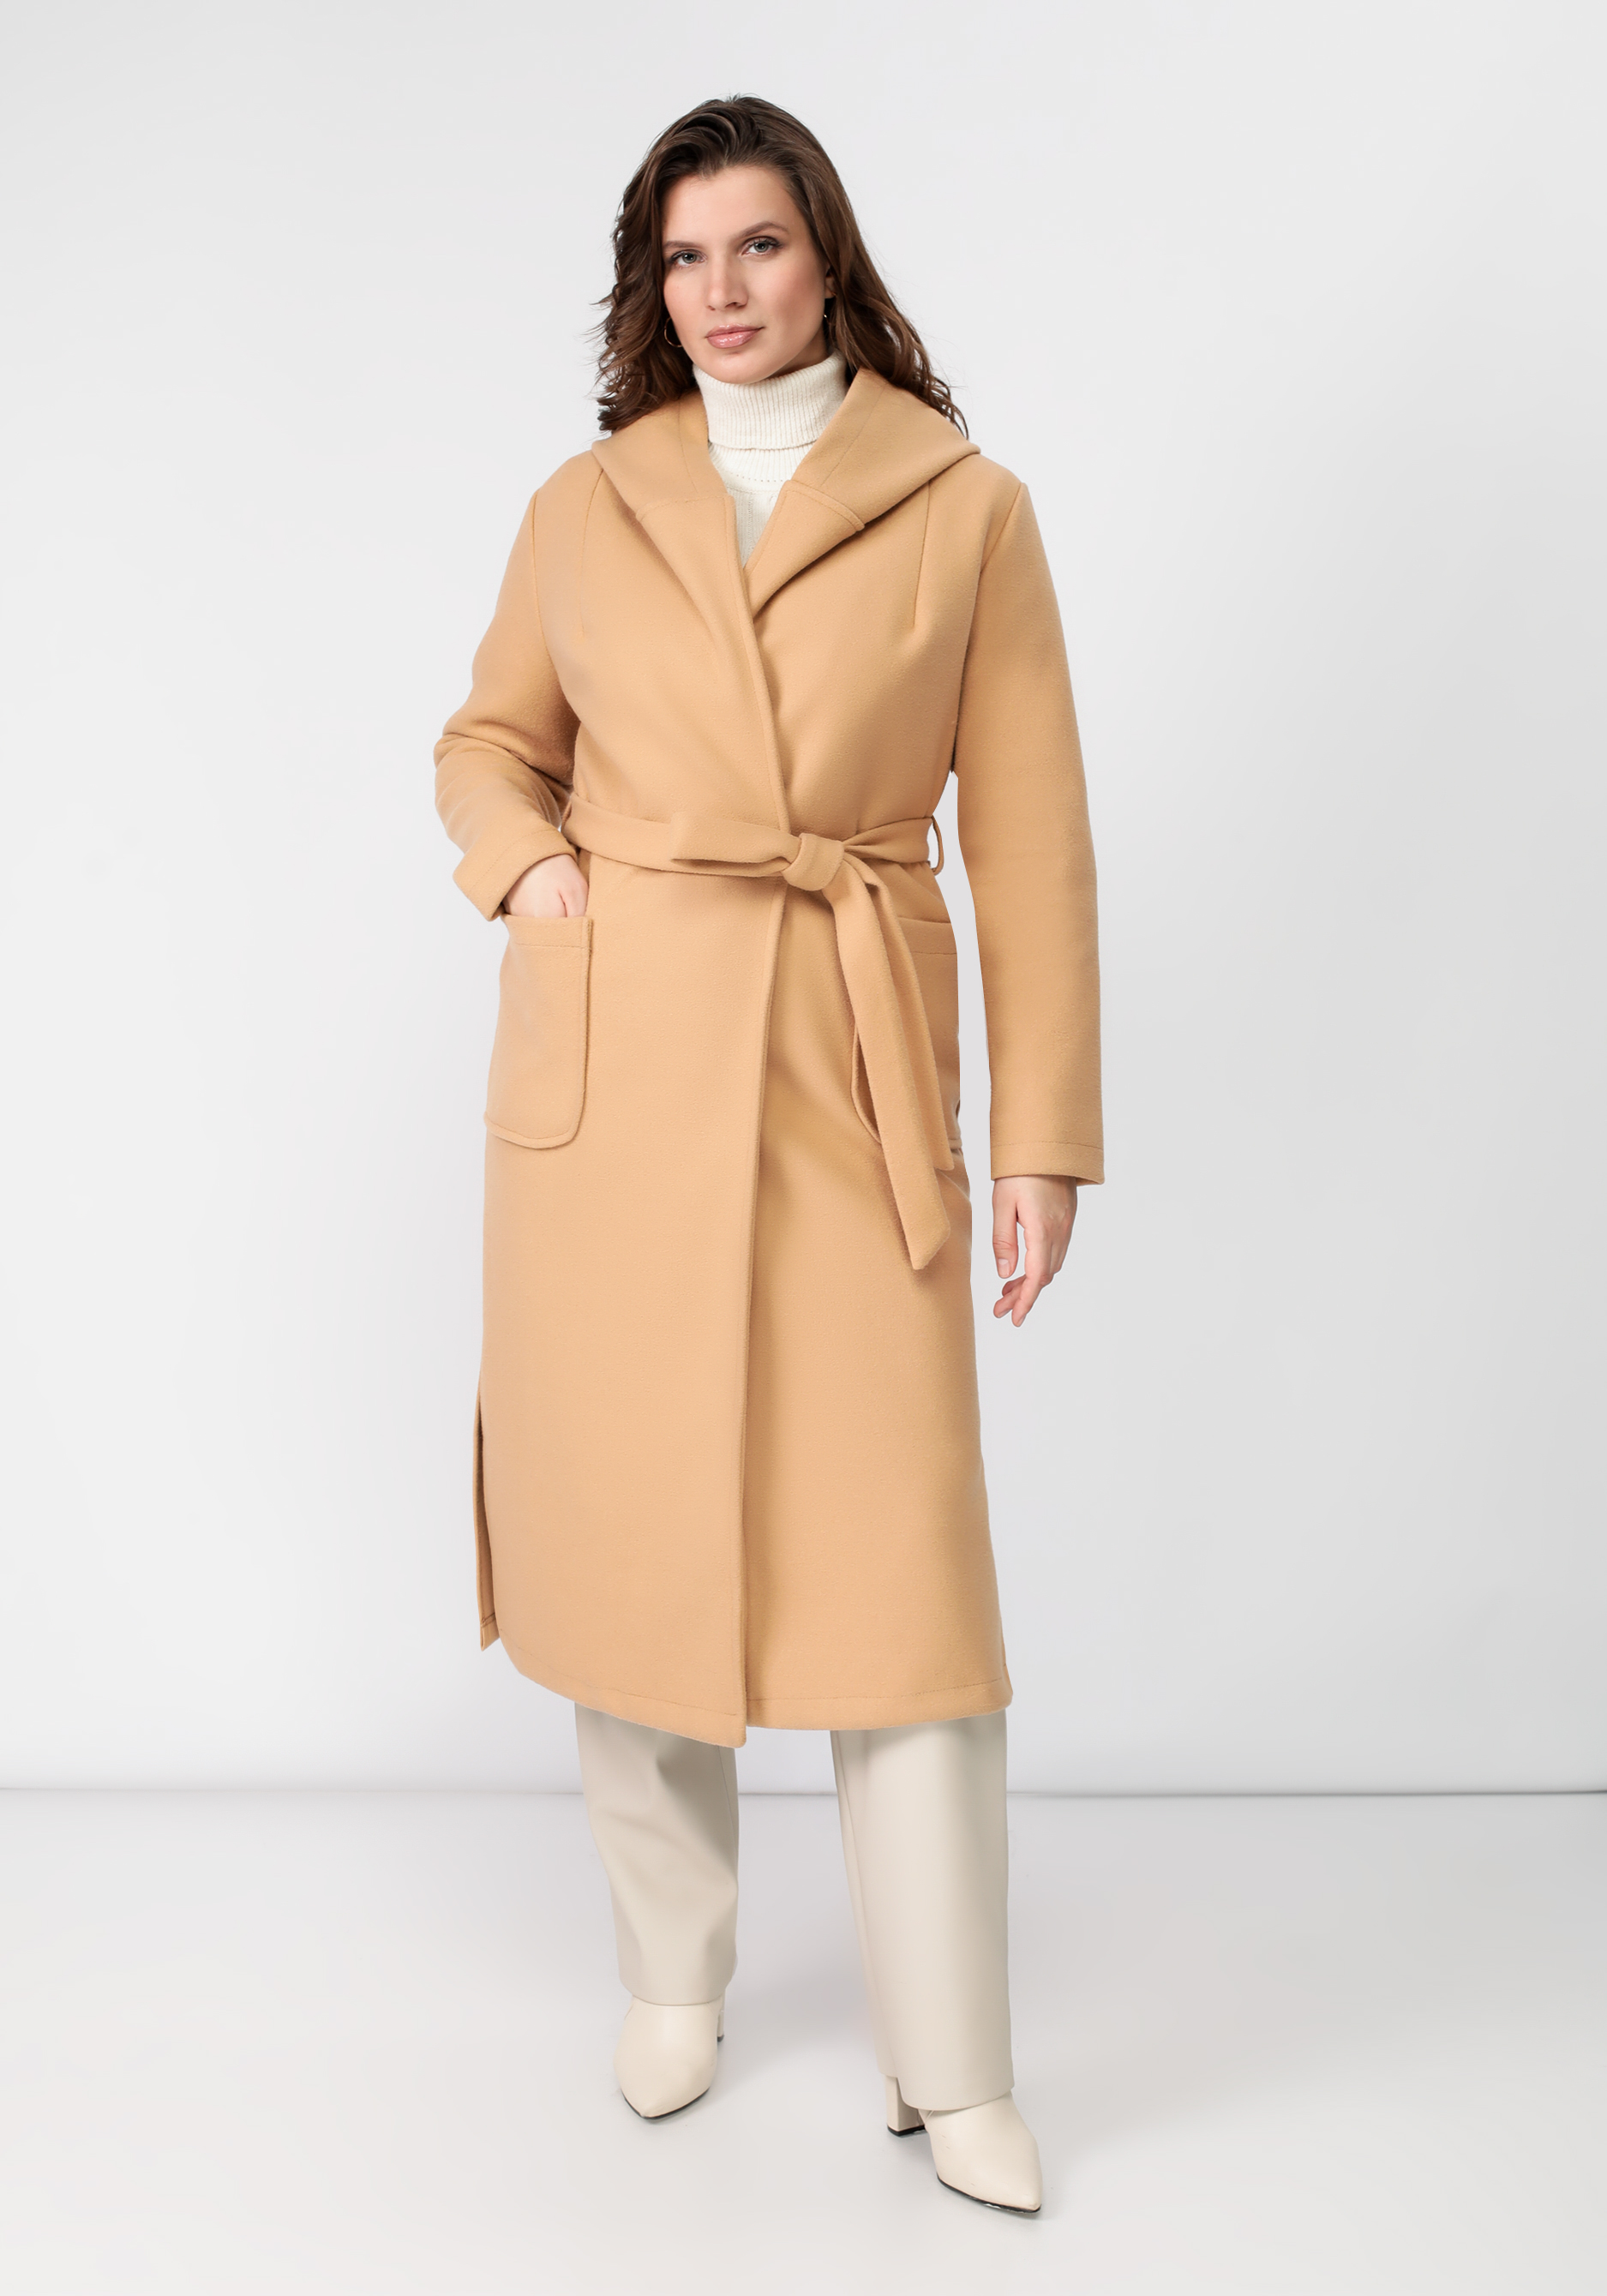 Пальто удлиненное с поясом Mio Imperatrice, цвет бежевый, размер 52